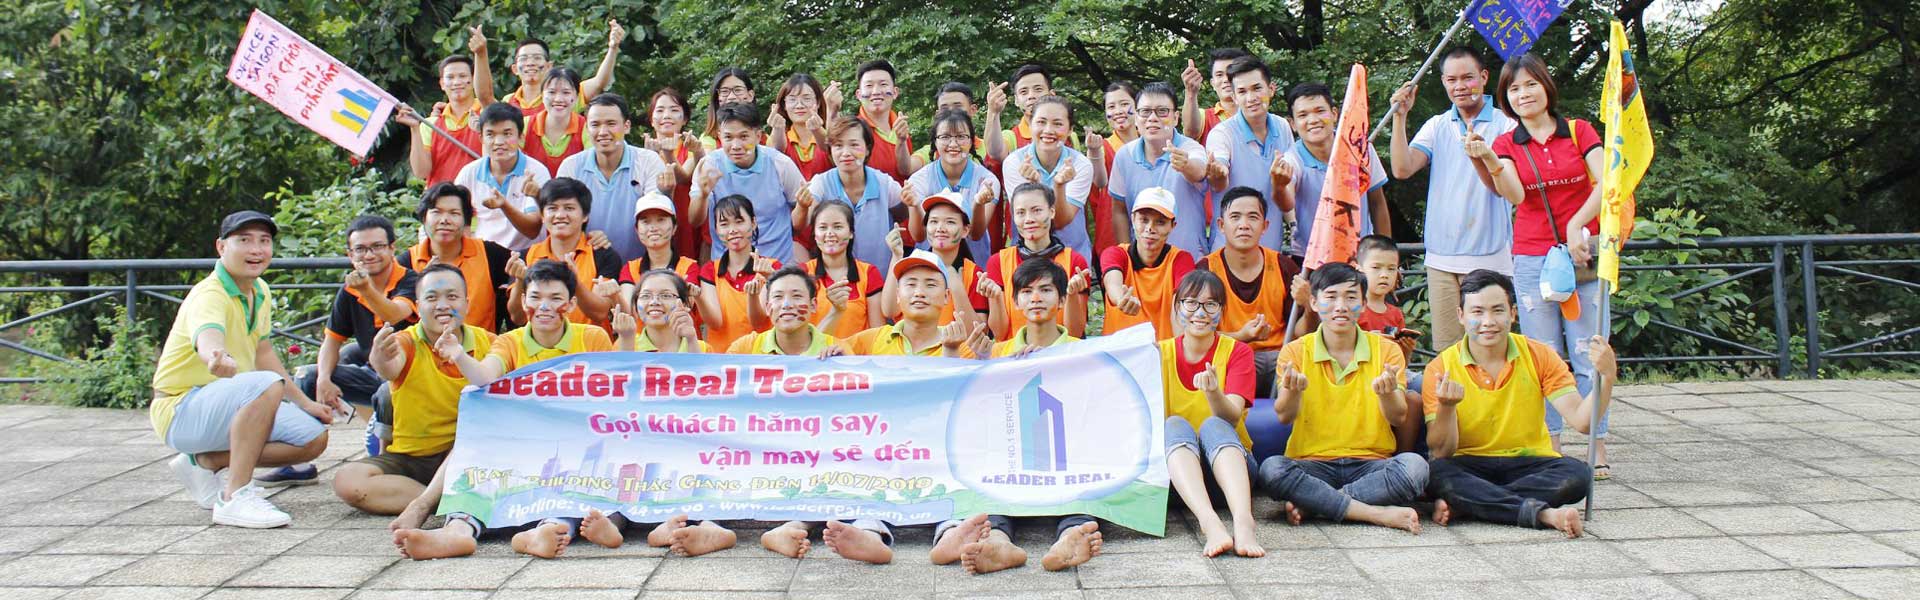 Tour du lịch khách đoàn - Team Building 01 ngày khám phá Thác Giang Điền vui nhộn